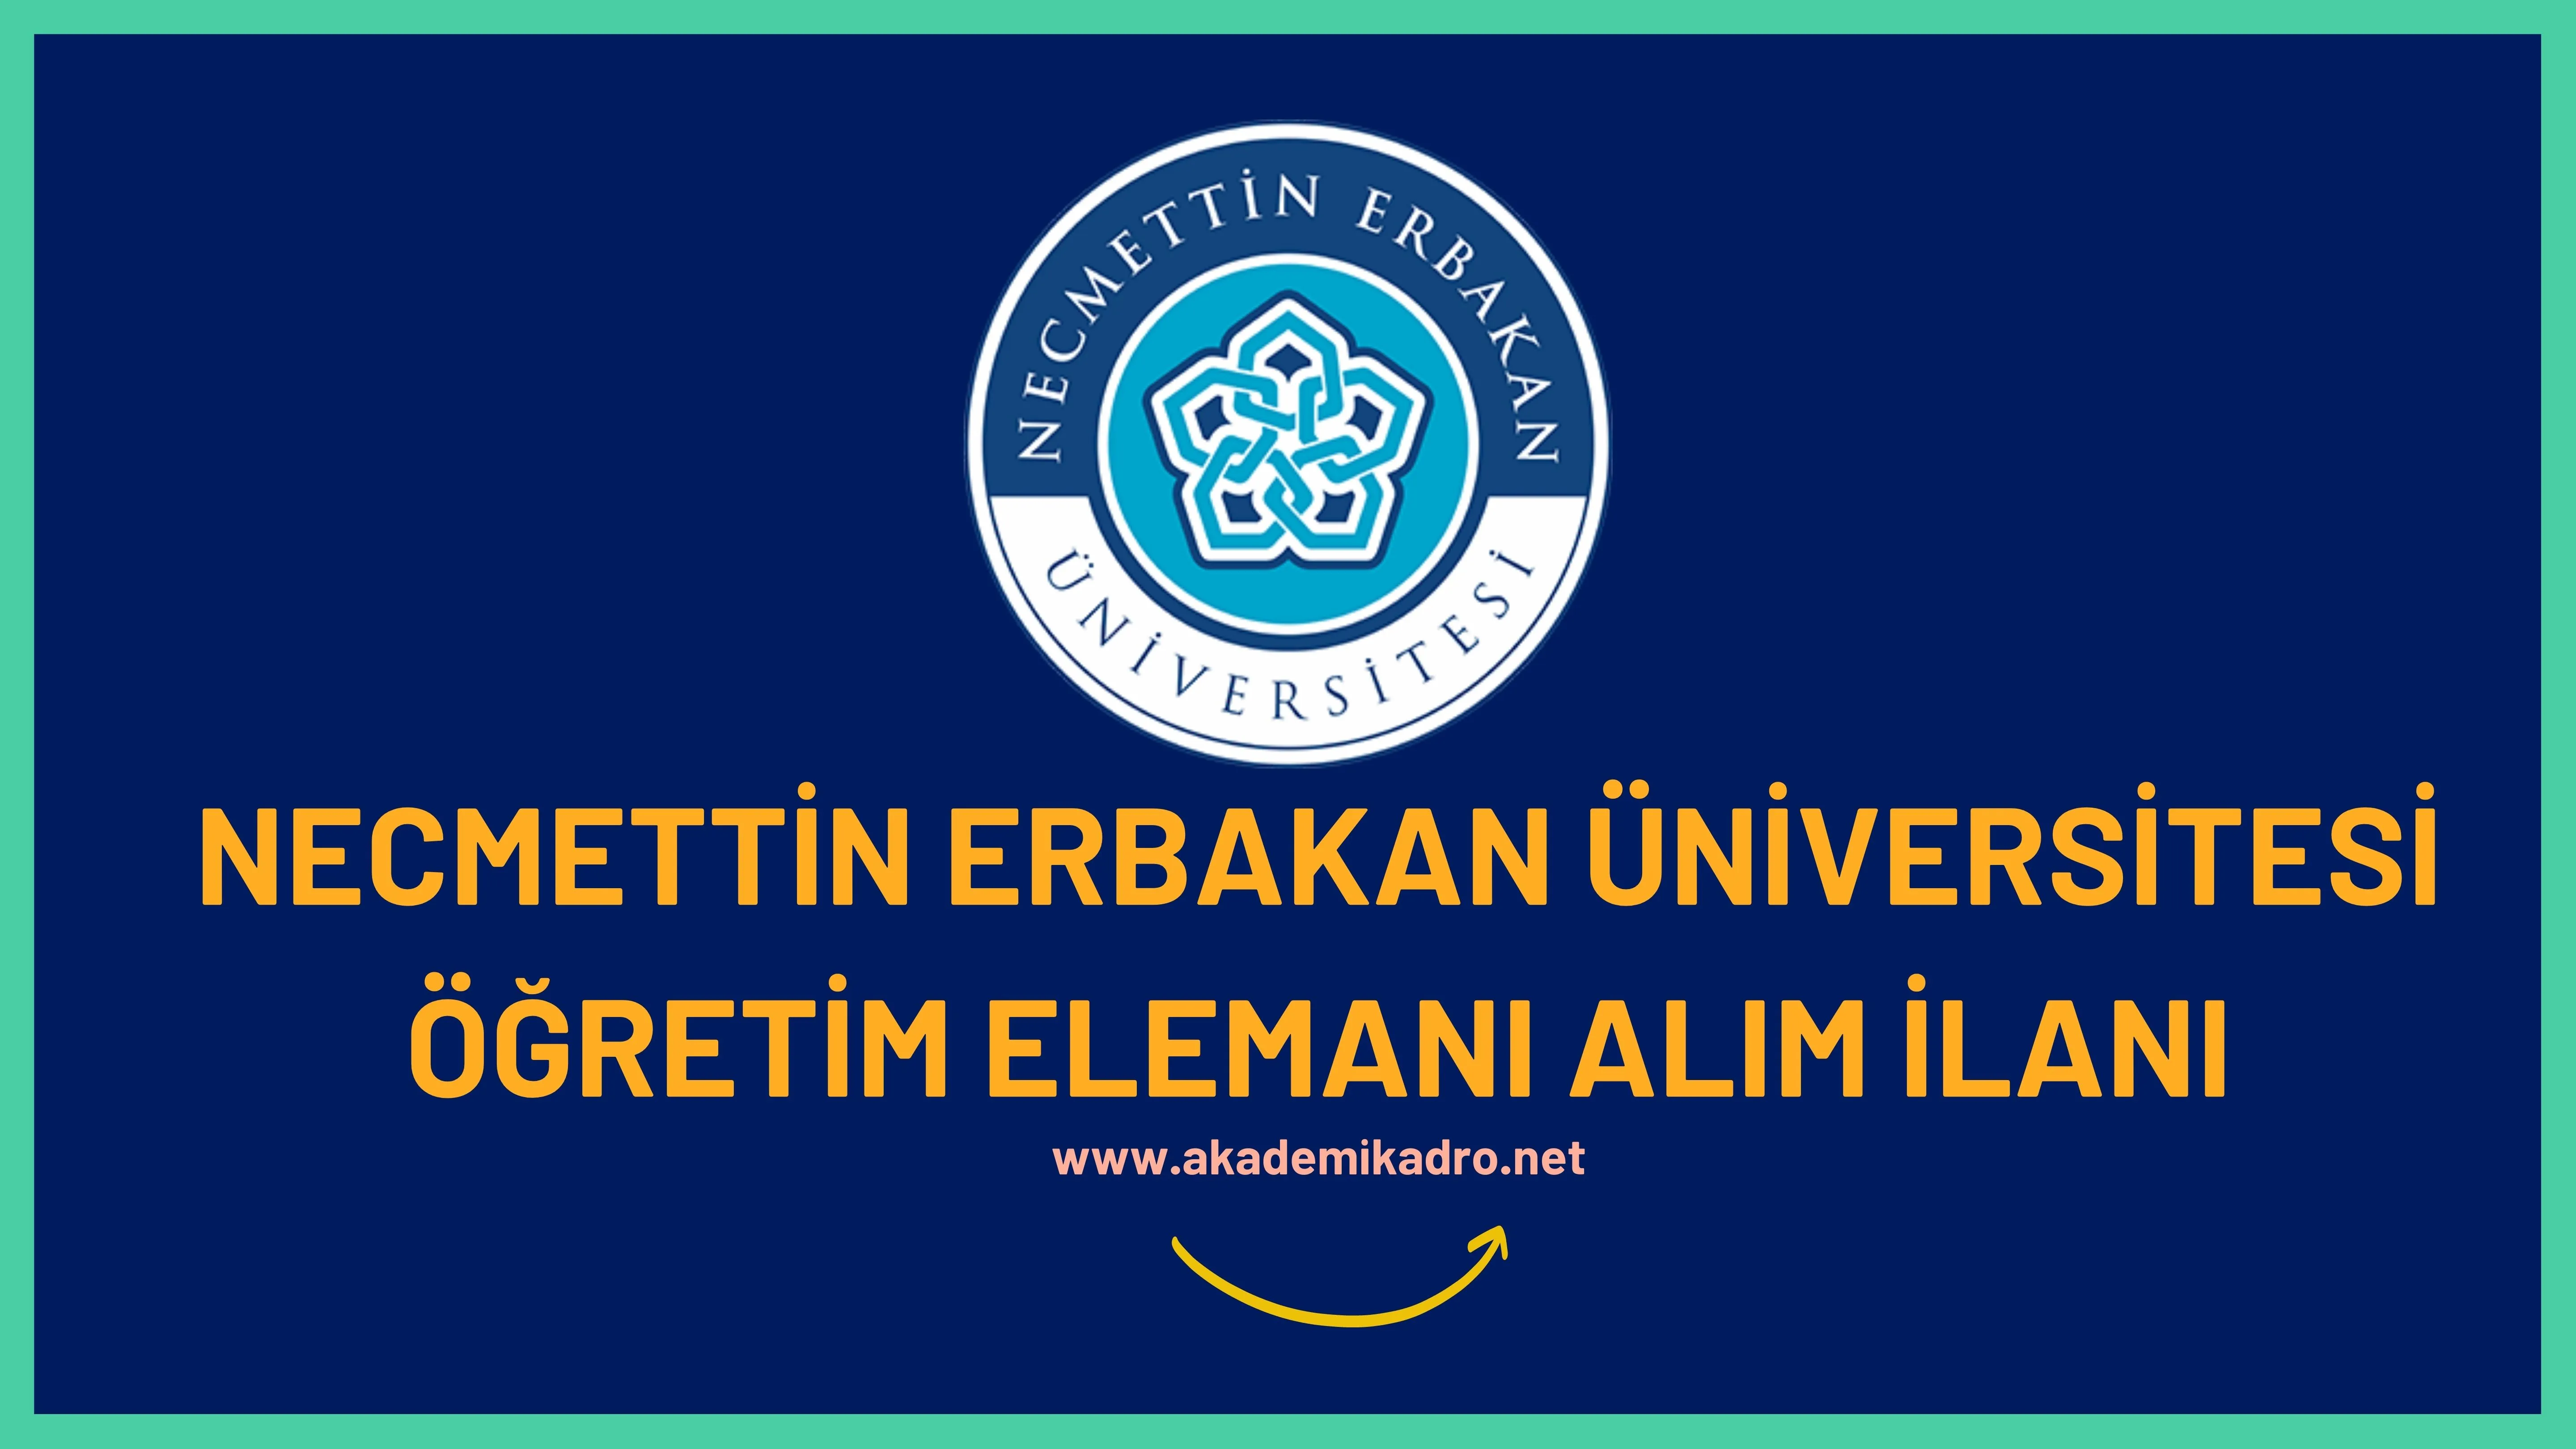 Necmettin Erbakan Üniversitesi 3 Öğretim Görevlisi ve Araştırma görevlisi alacaktır. Son başvuru tarihi 20 Ekim 2022